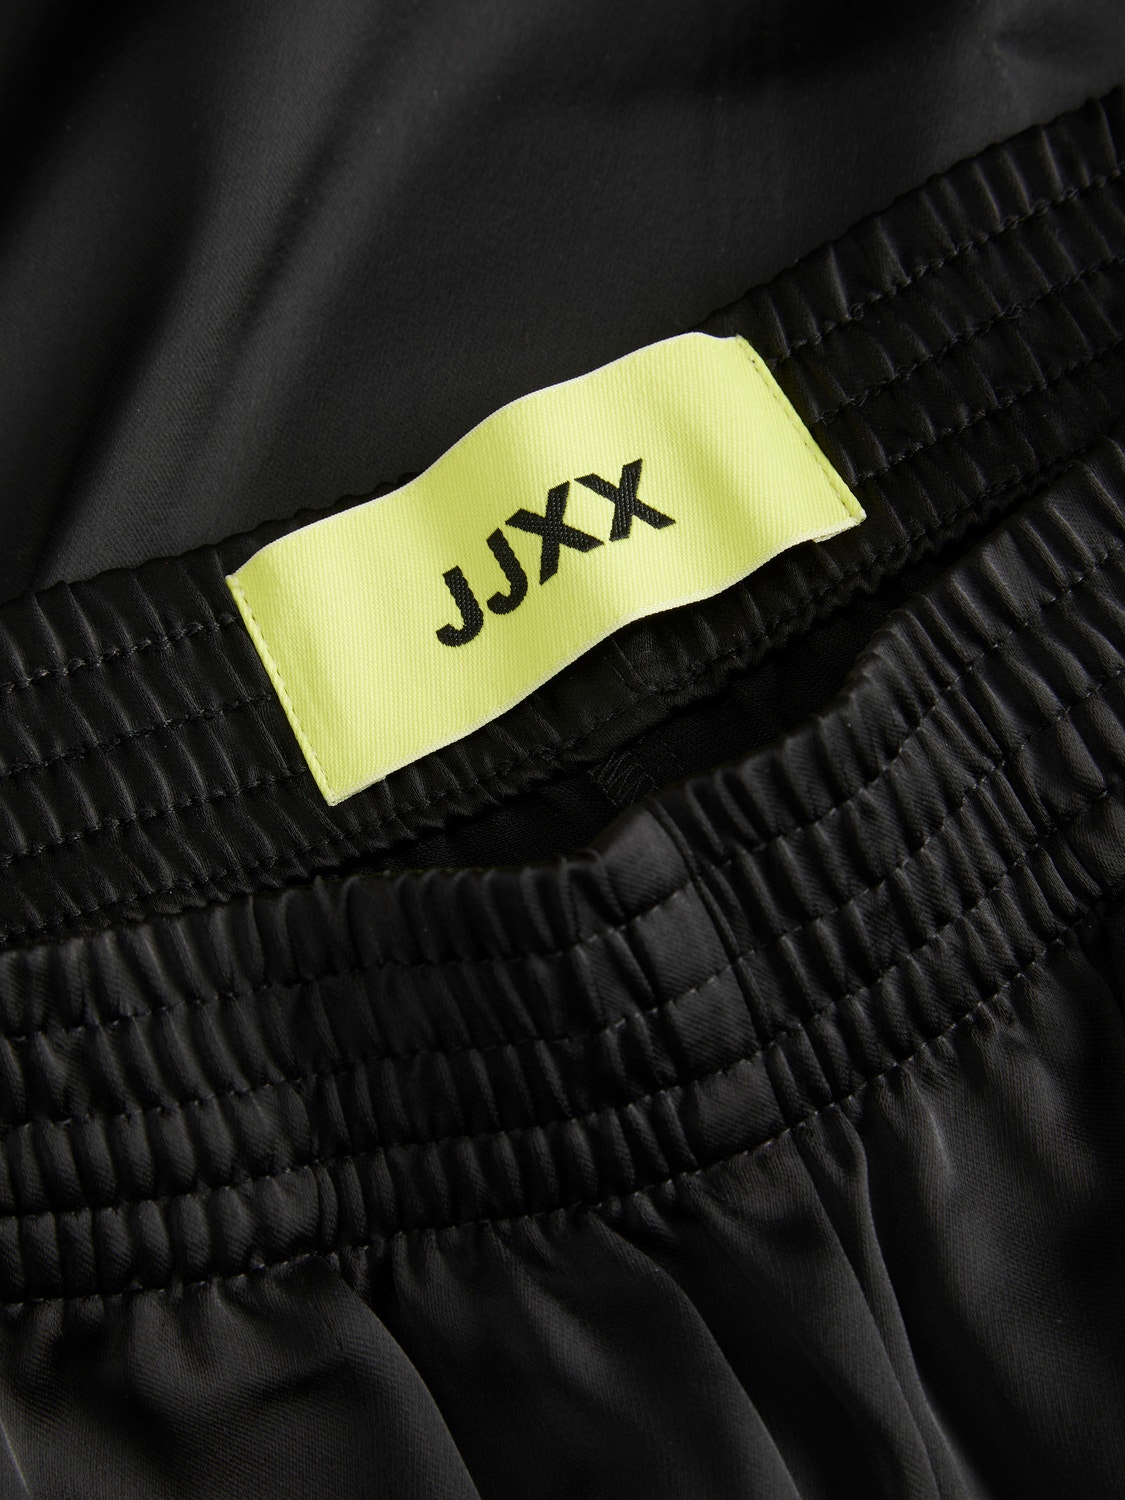 JJXX JXKIRA Klassikalised püksid -Black - 12200161